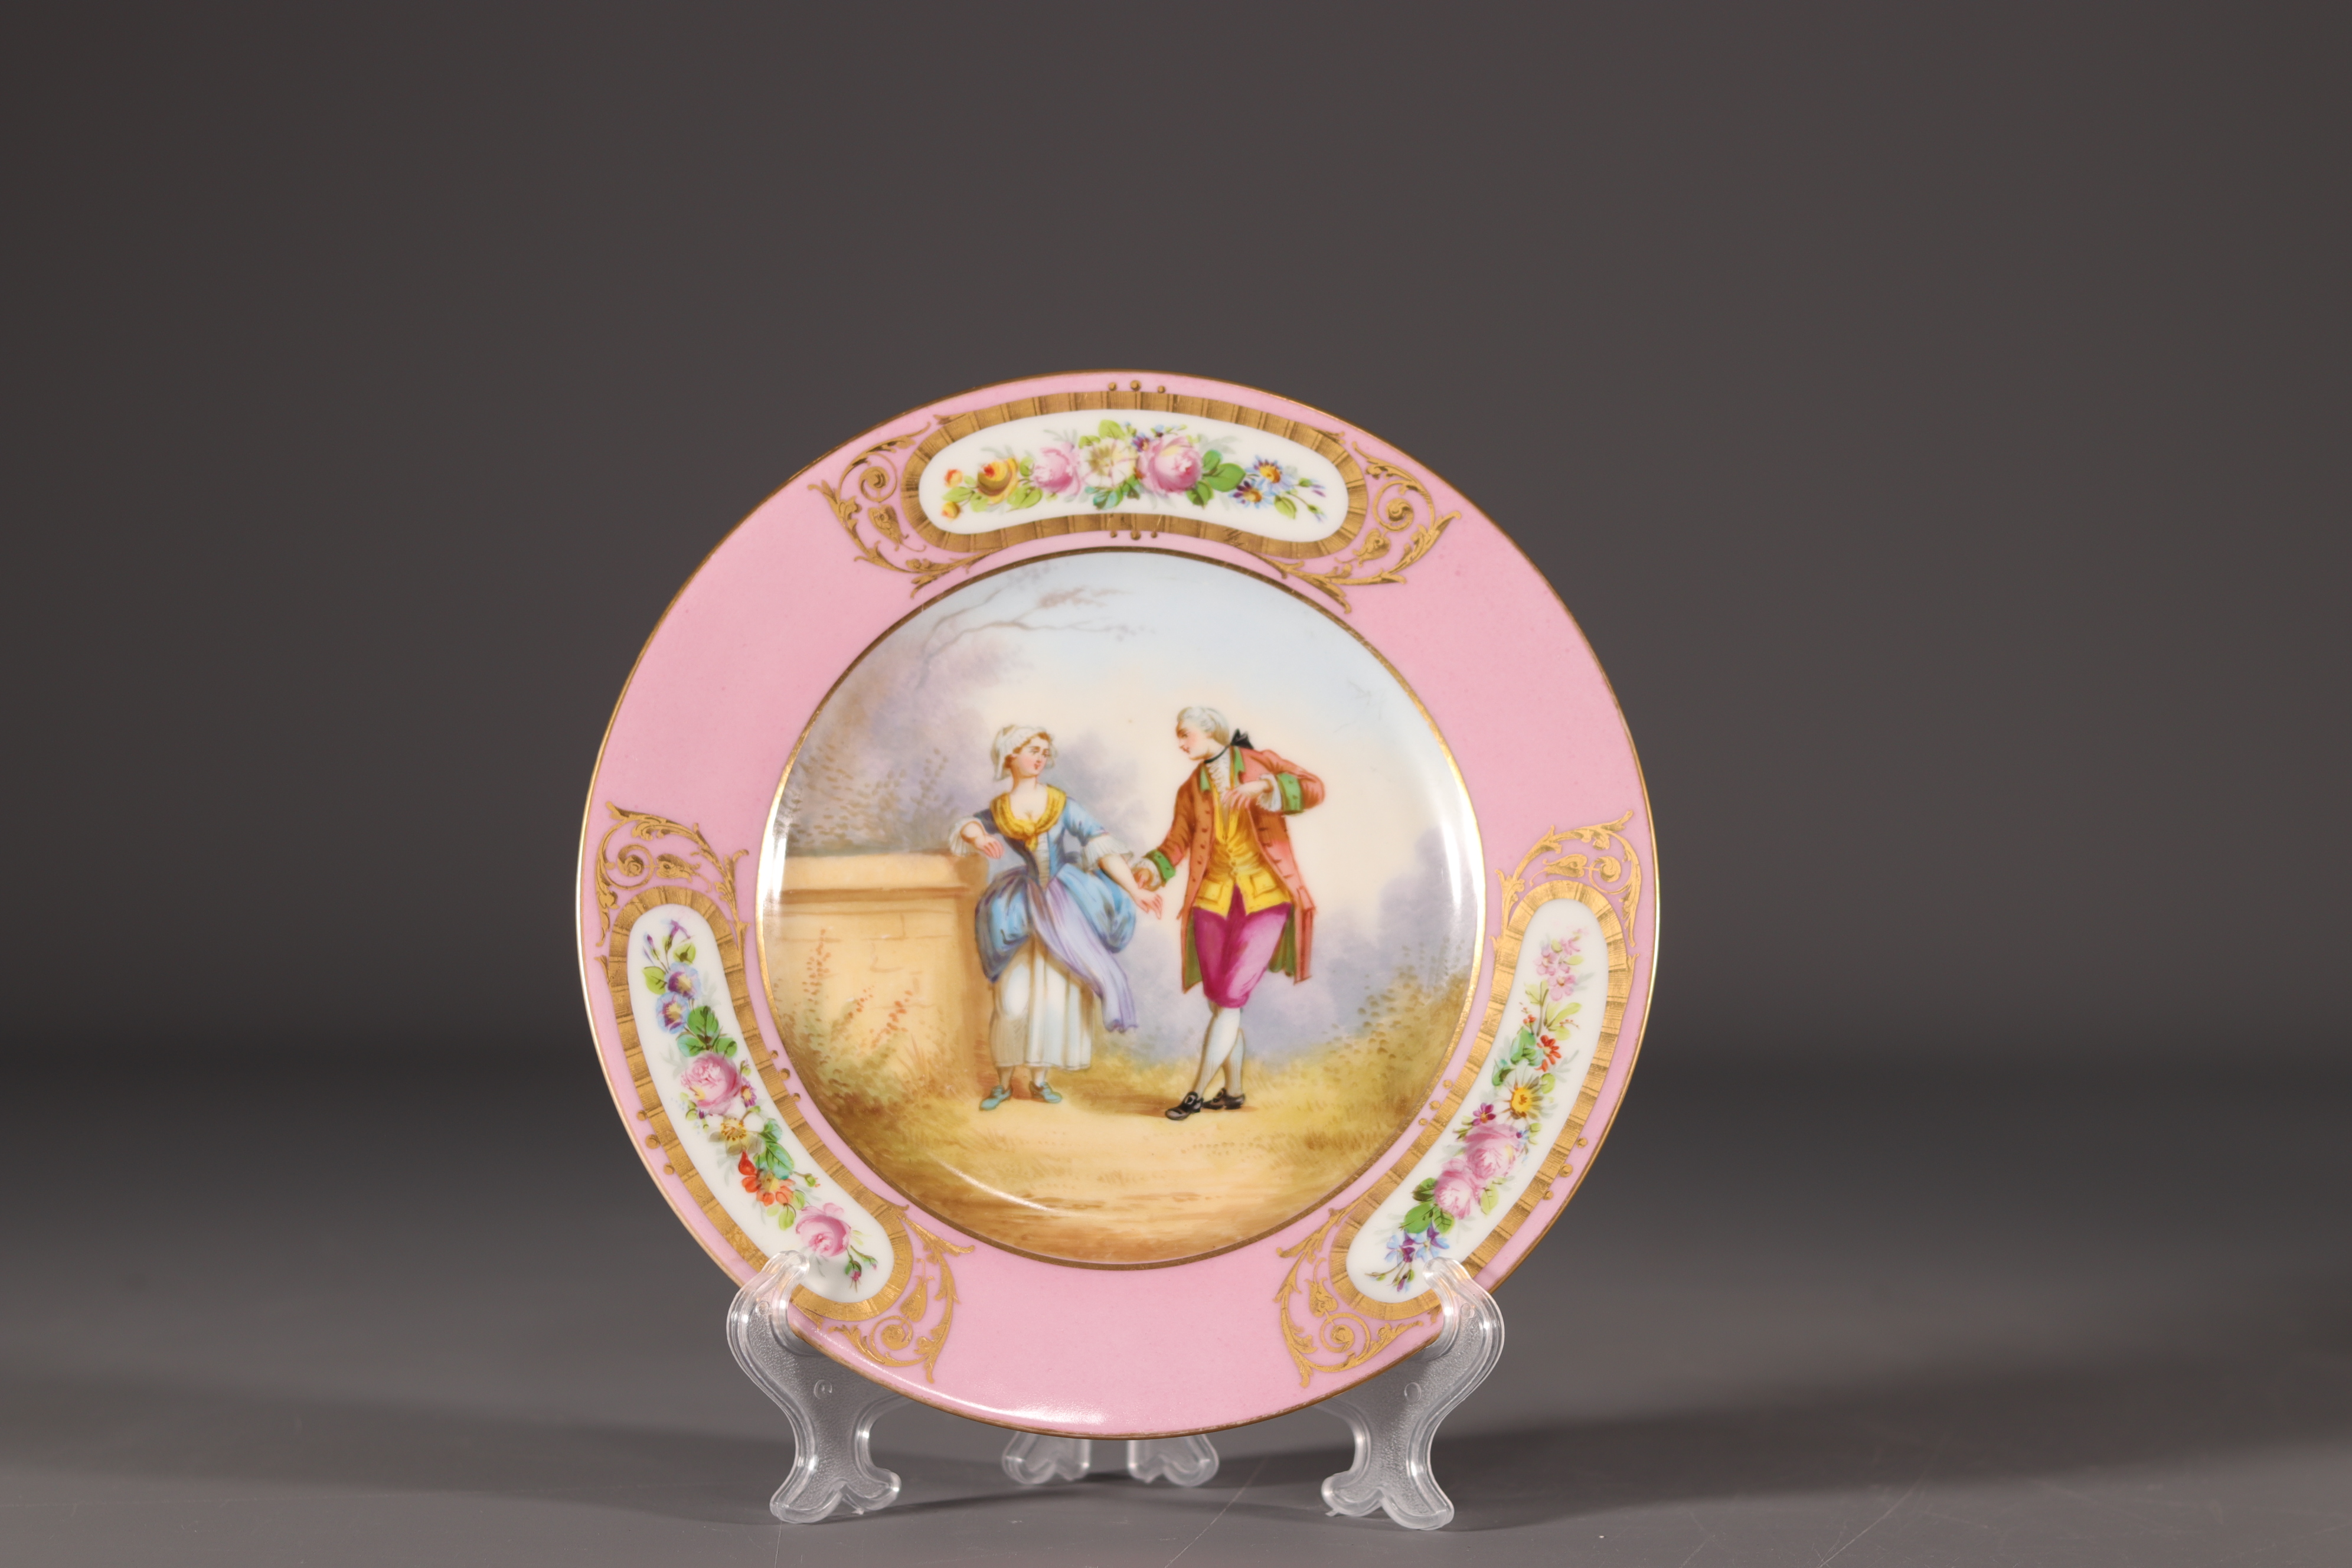 Sevres - Chateau des Tuileries, porcelain plate with romantic decor.